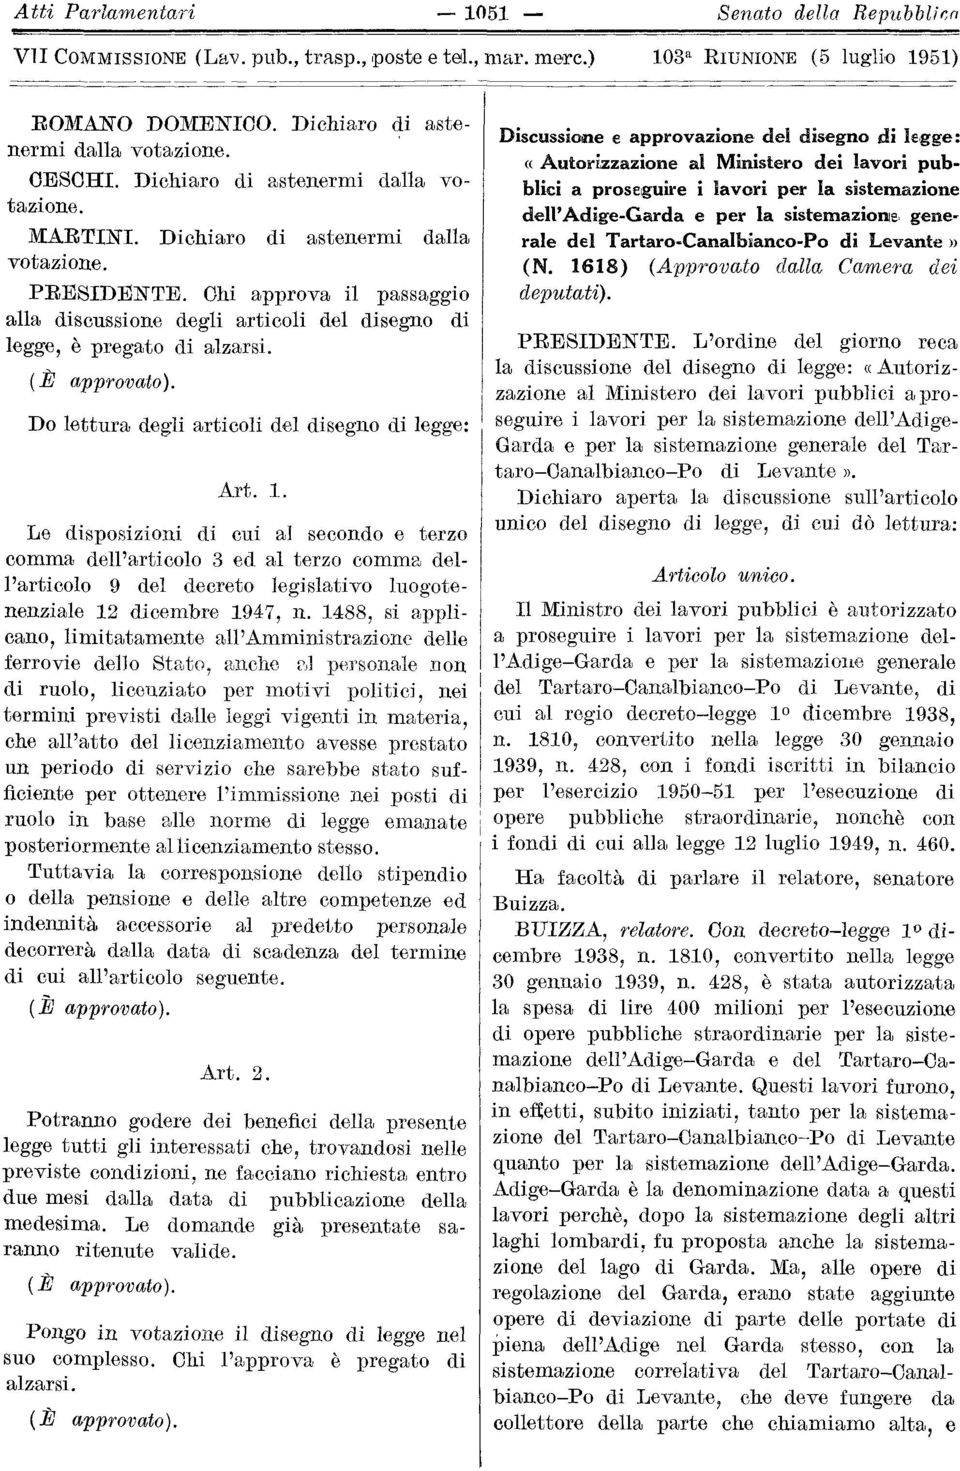 Le disposizioni di cui al secondo e terzo comma dell'articolo 3 ed al terzo comma dell'articolo 9 del decreto legislativo luogotenenziale 12 dicembre 1947, n.